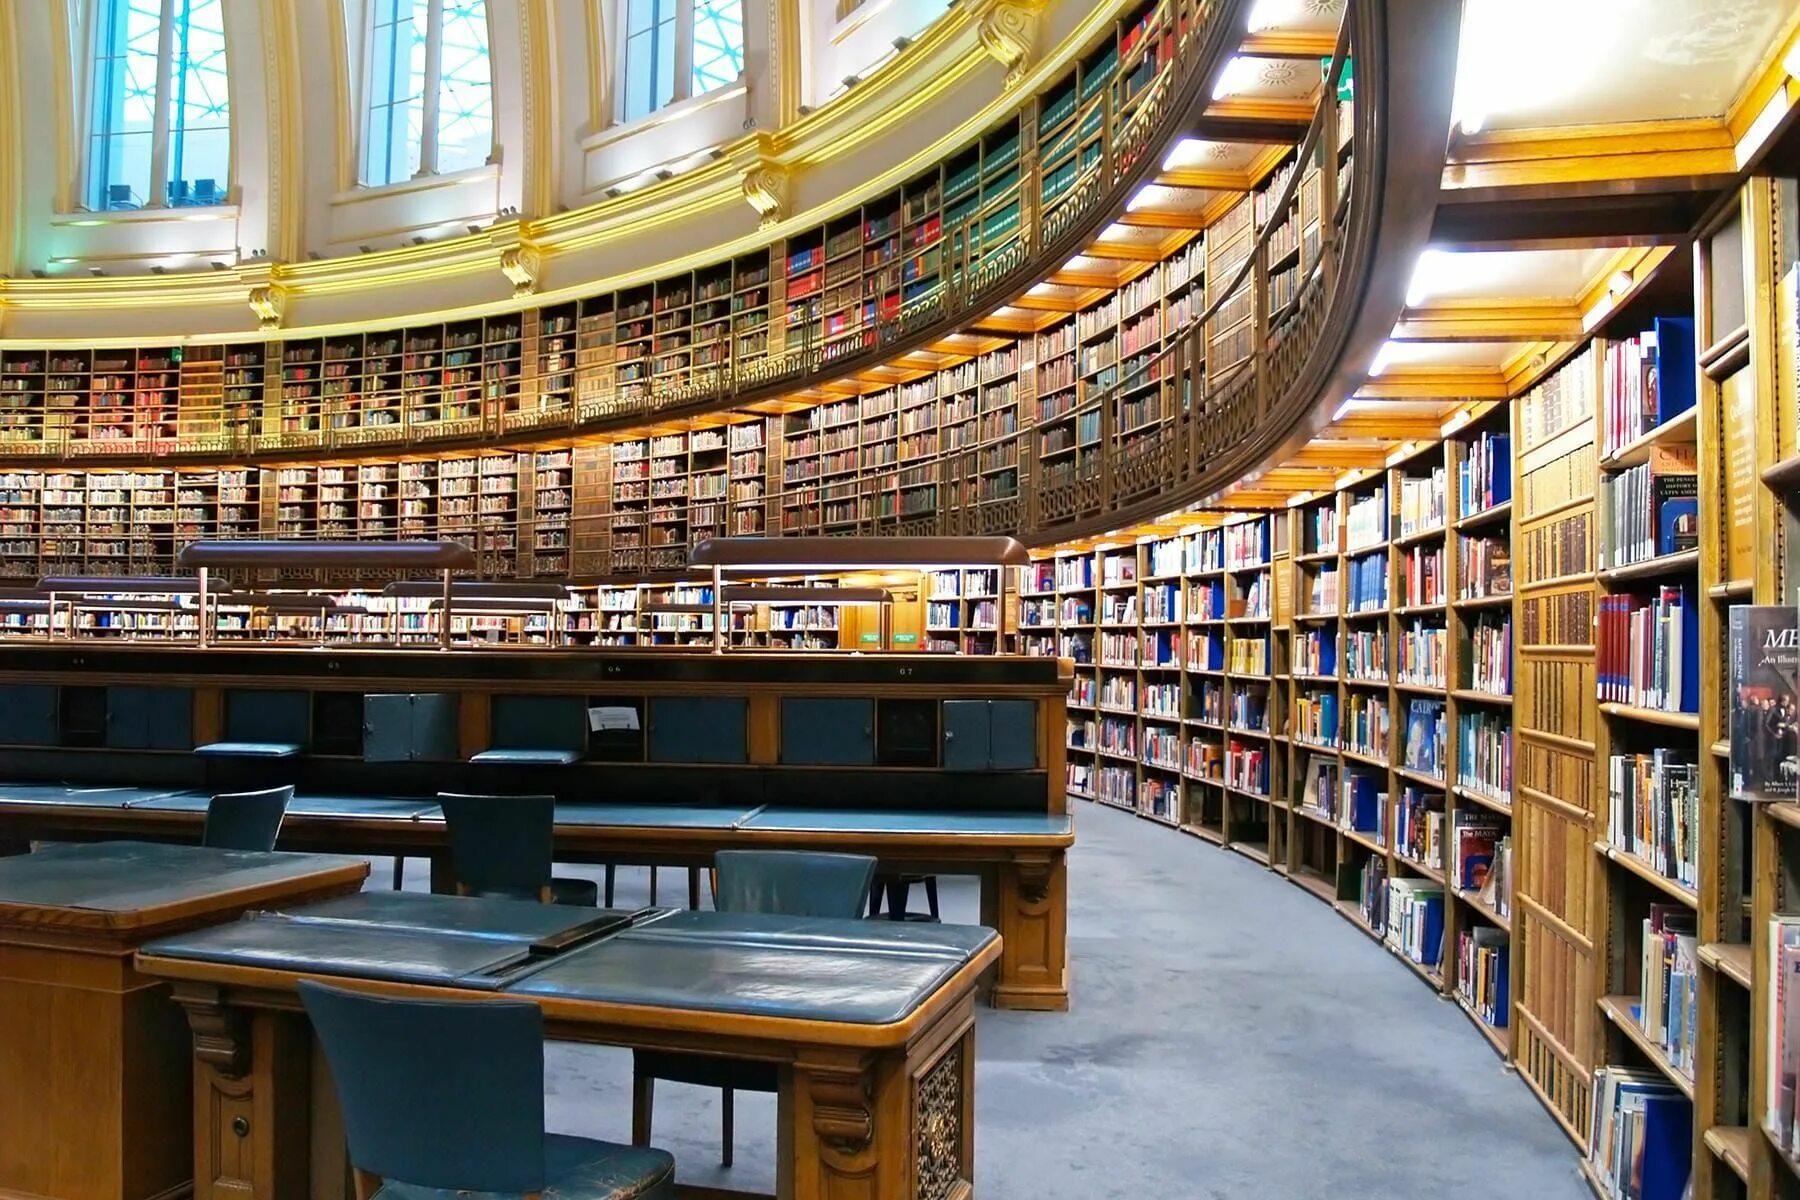 Cc library. Библиотека британского музея. Библиотека британского музея в Лондоне. Библиотека в Мюнхене. Баварская государственная библиотека в Мюнхене.